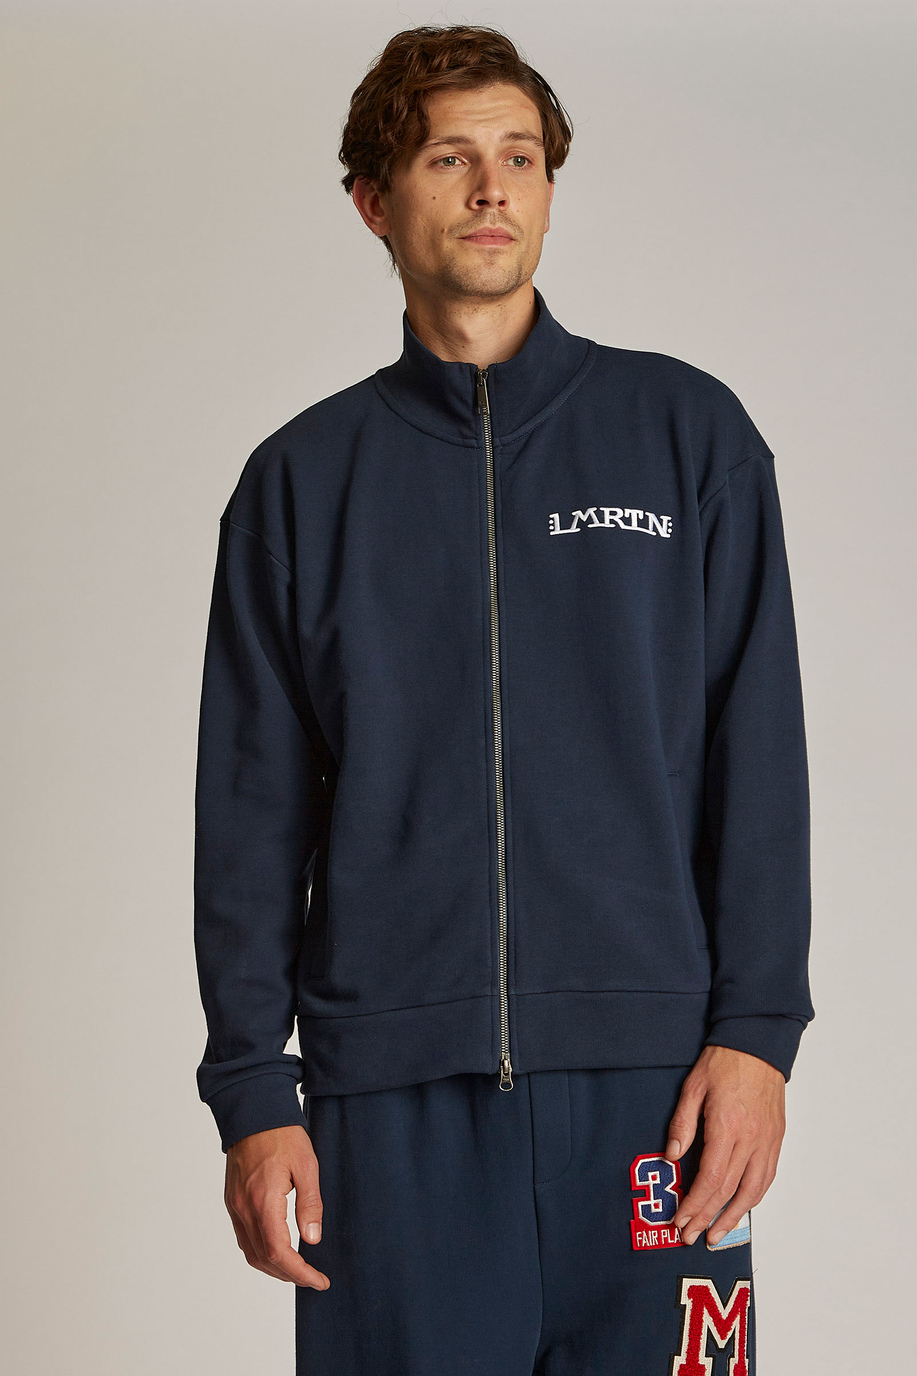 Herren-Sweatshirt aus 100 % Baumwolle mit Reißverschluss, oversized Modell - Inspiration | La Martina - Official Online Shop